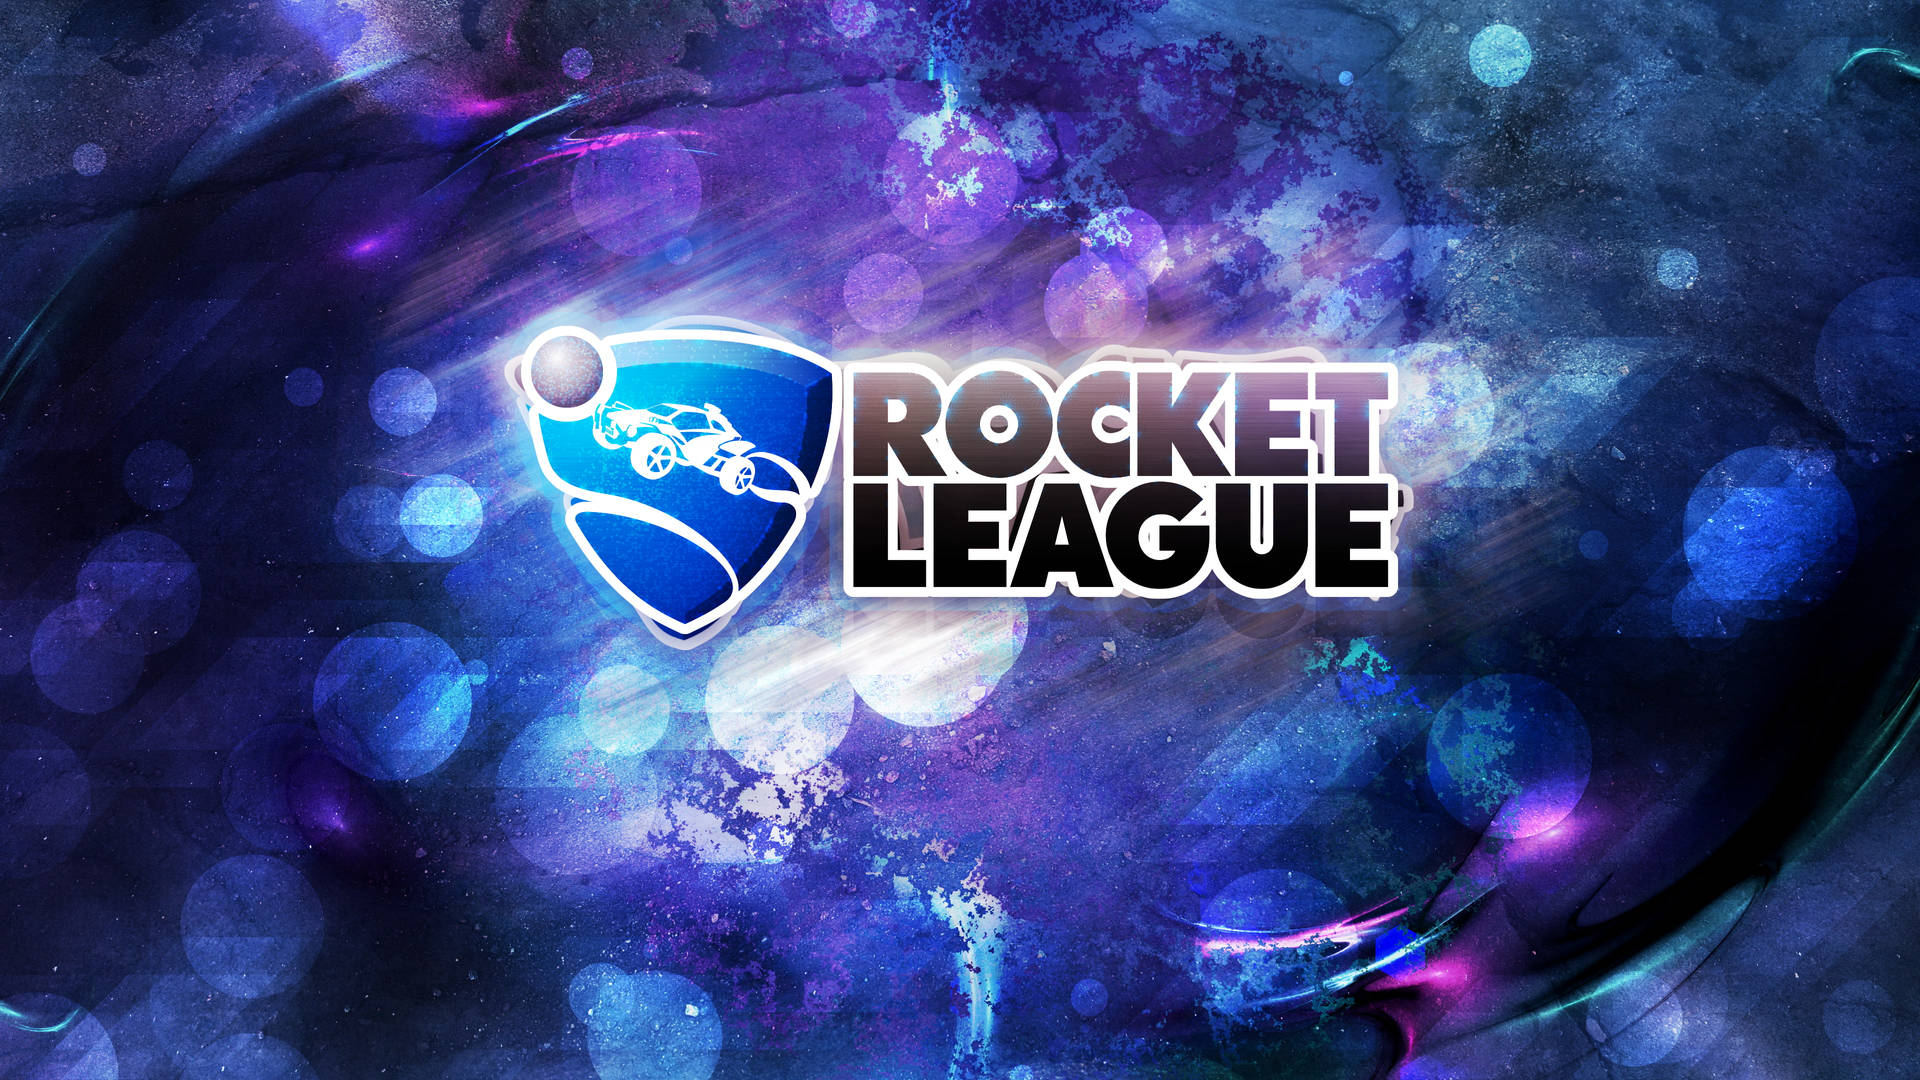 Rocket League Hd Logo